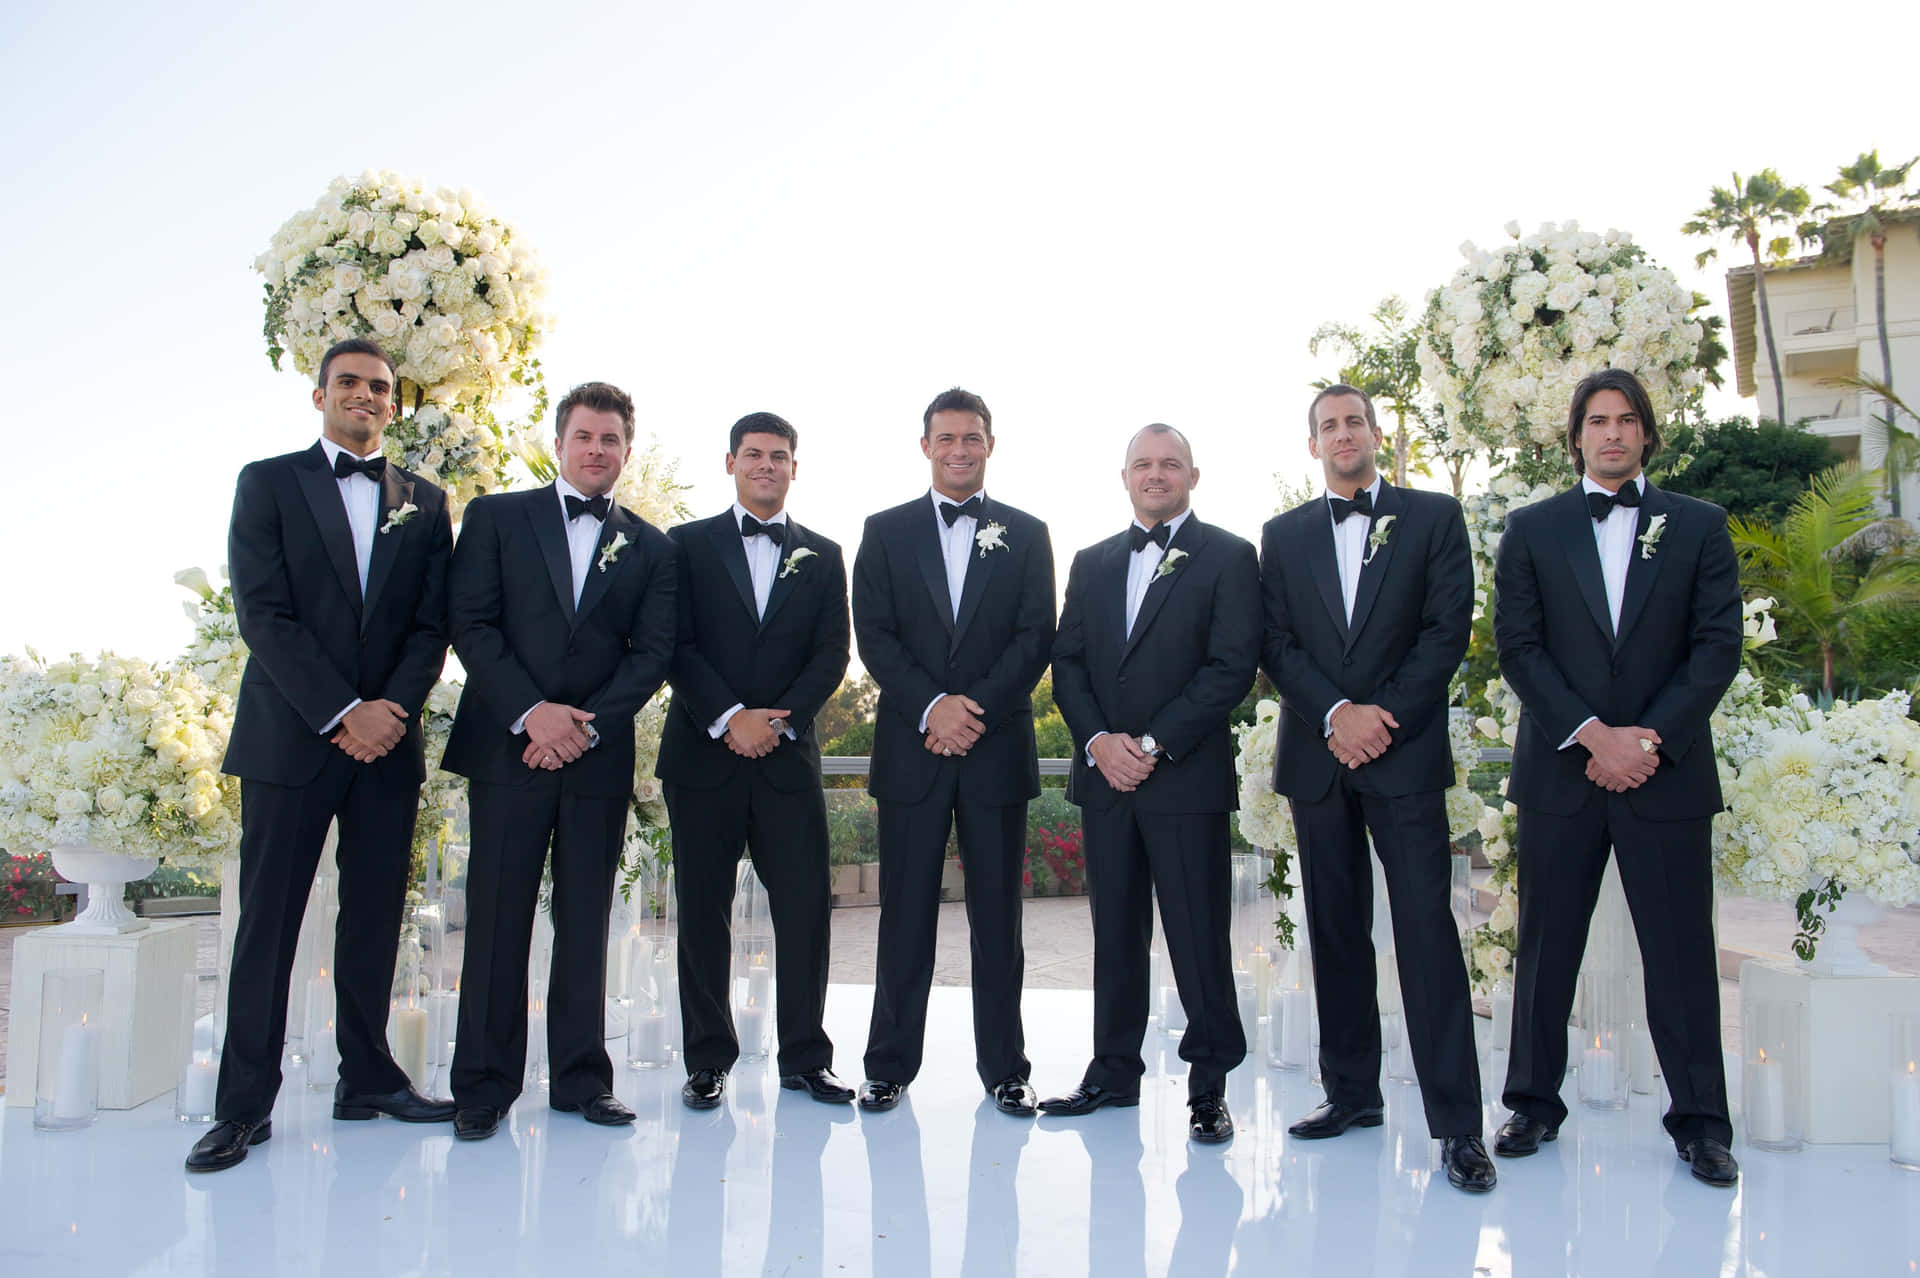 Einegruppe Von Fünf In Schale Gekleideten Trauzeugen Posieren Zusammen Bei Einer Hochzeit.